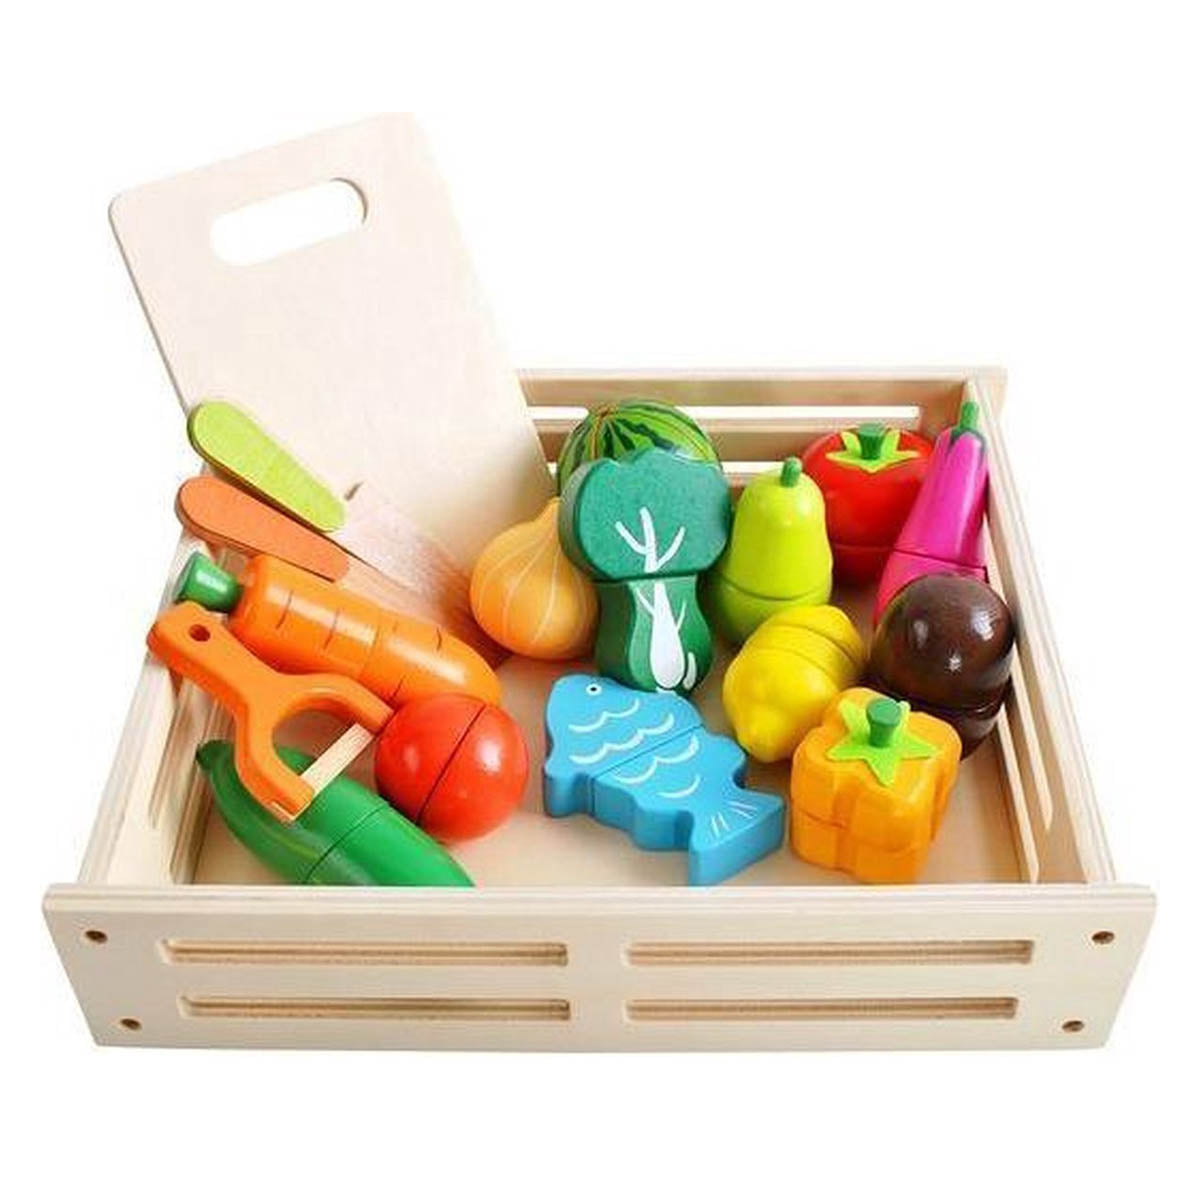 Ariko Holzspielzeug-Set Obst und Gemüse - 17-teilig - Küchenzubehör - Spielzeug kaufen - Spielzeugnahrung - Spielzeug Obstholz